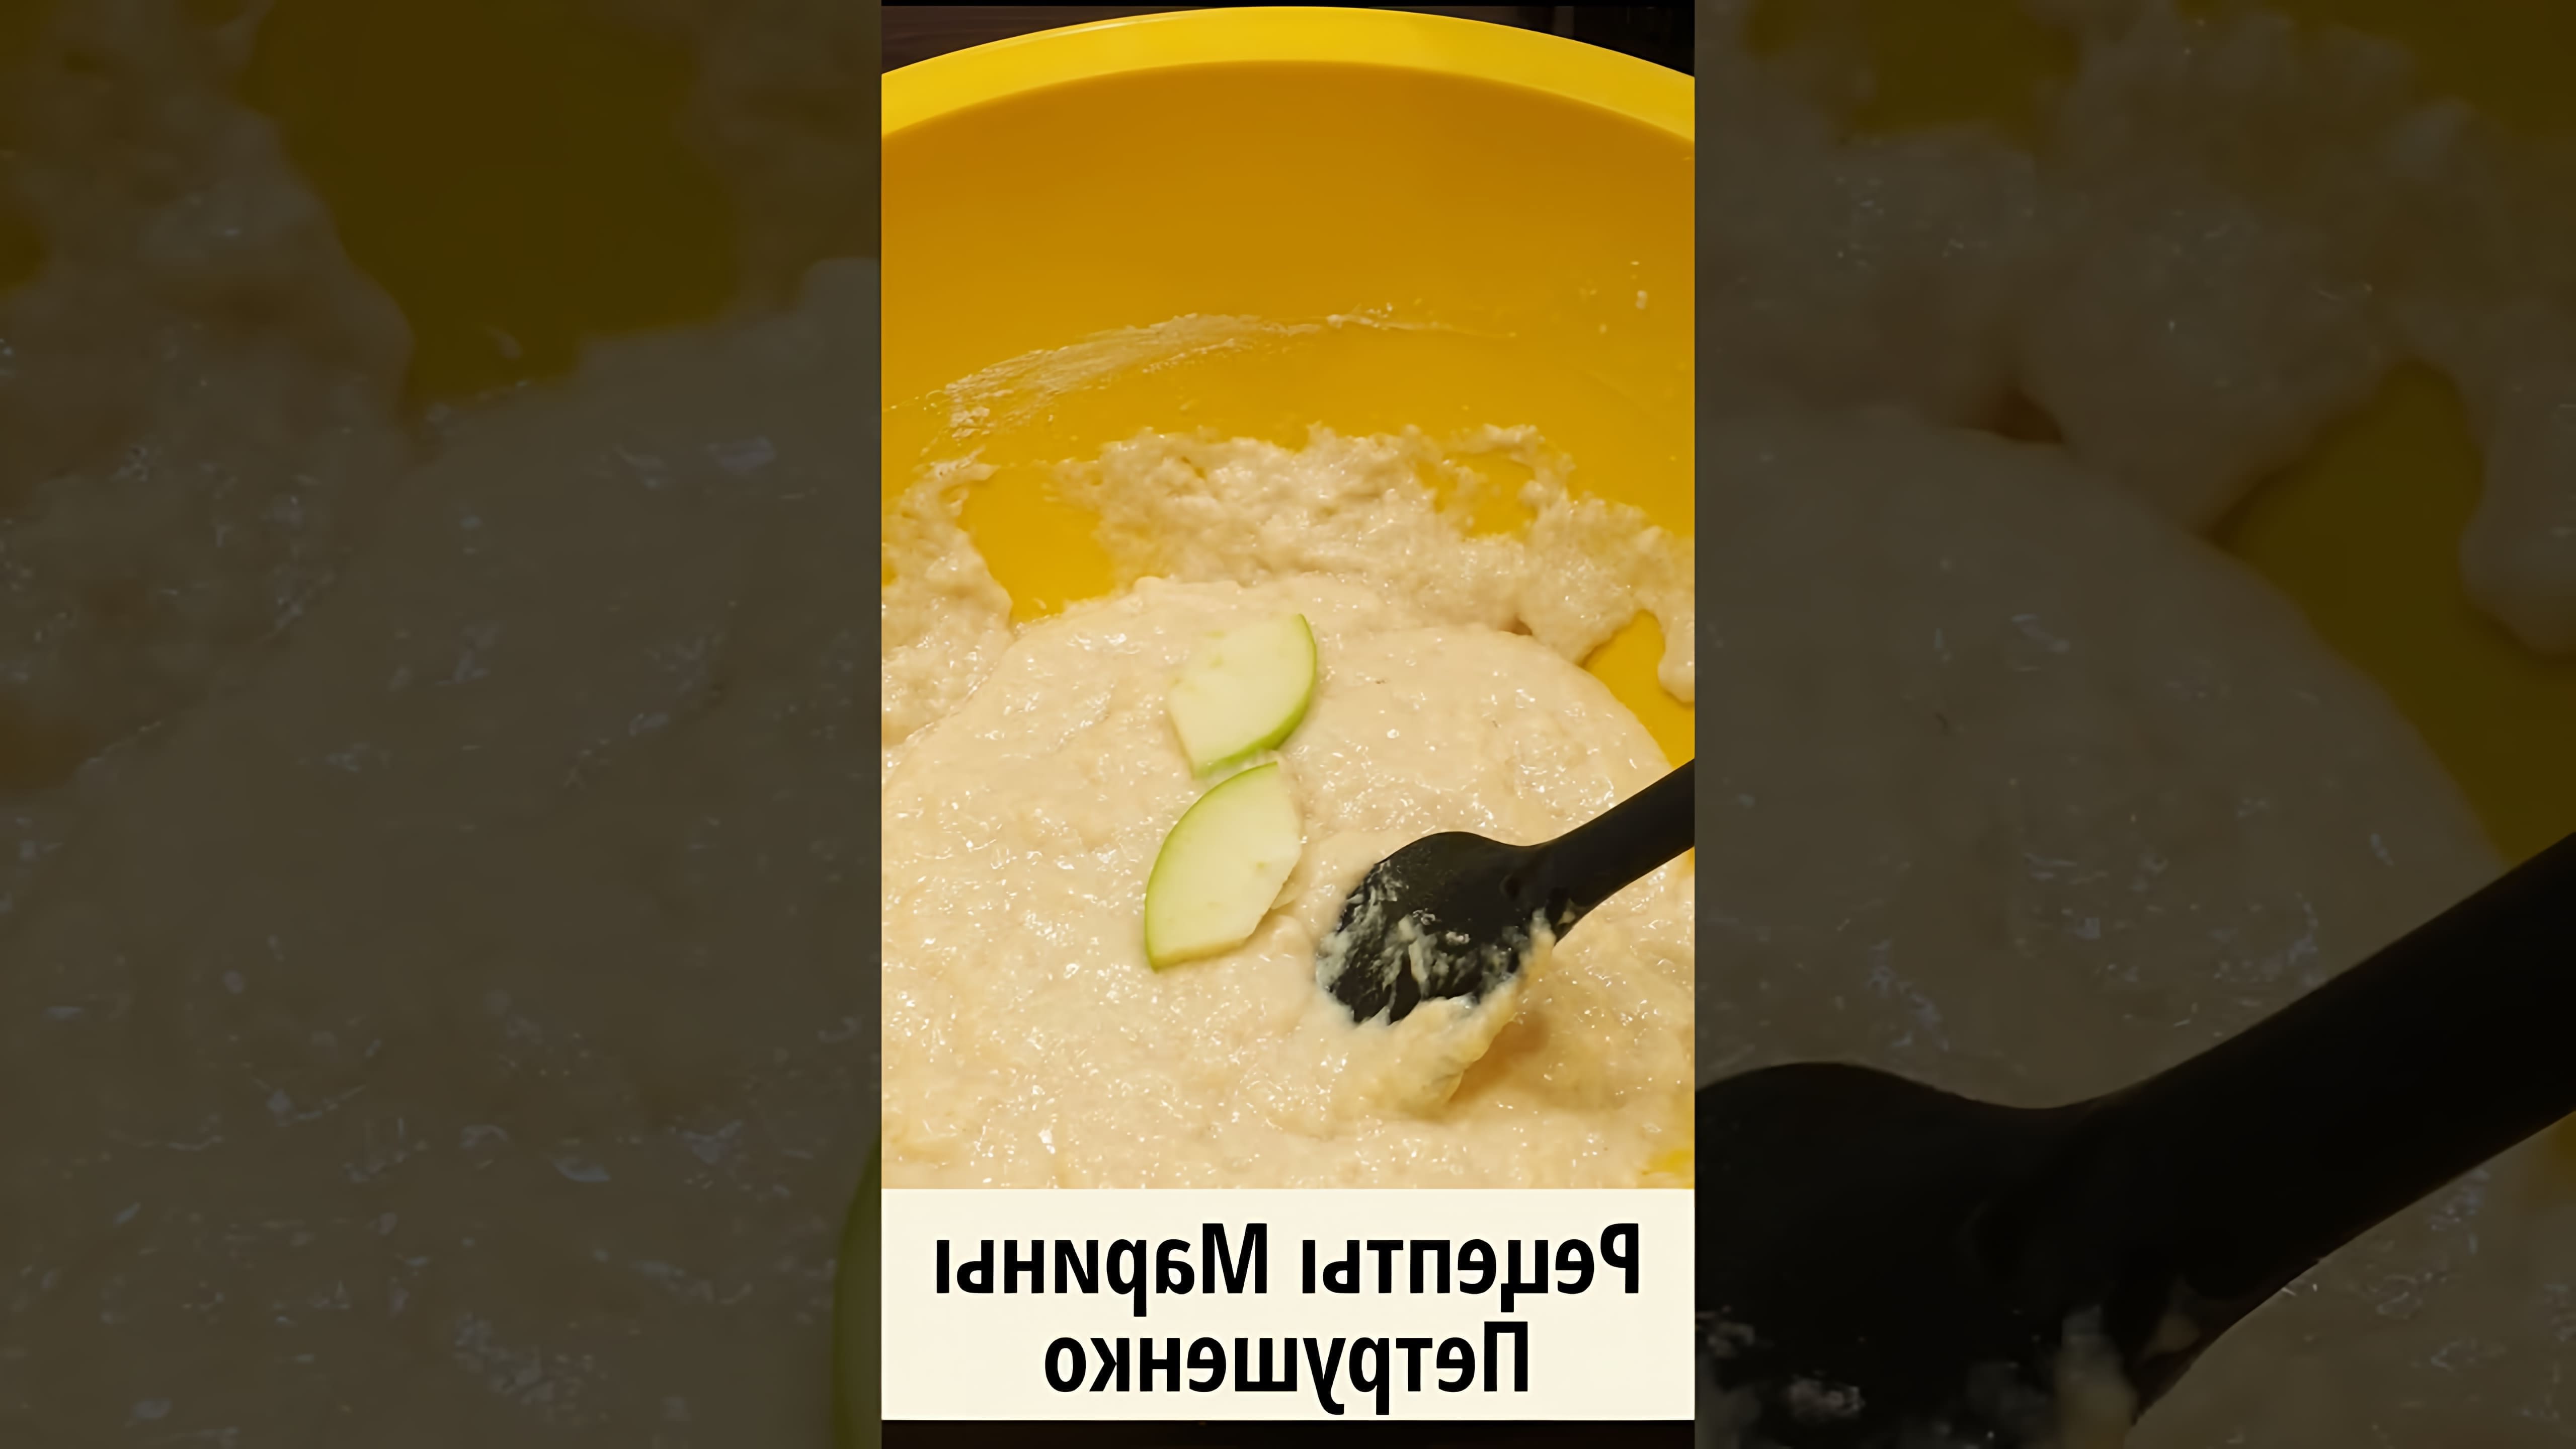 В этом видео демонстрируется рецепт приготовления вкусного постного пирога с яблоками в мультиварке